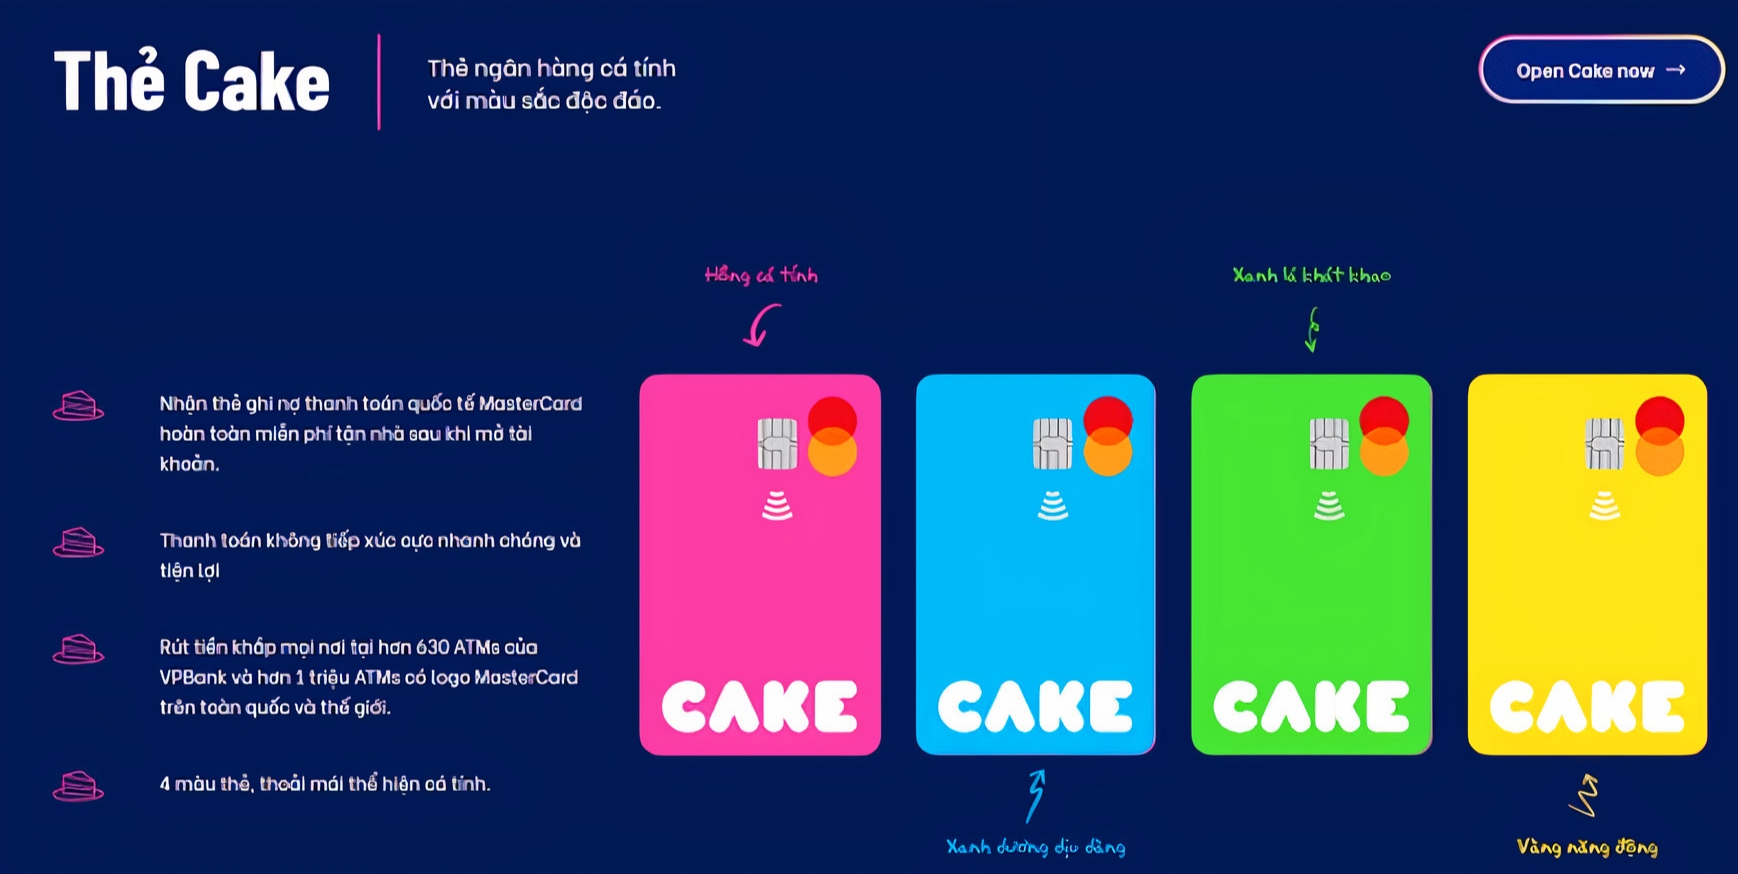 Tài khoản Cake là gì? Phát hành thẻ Cake nhiều màu sắc